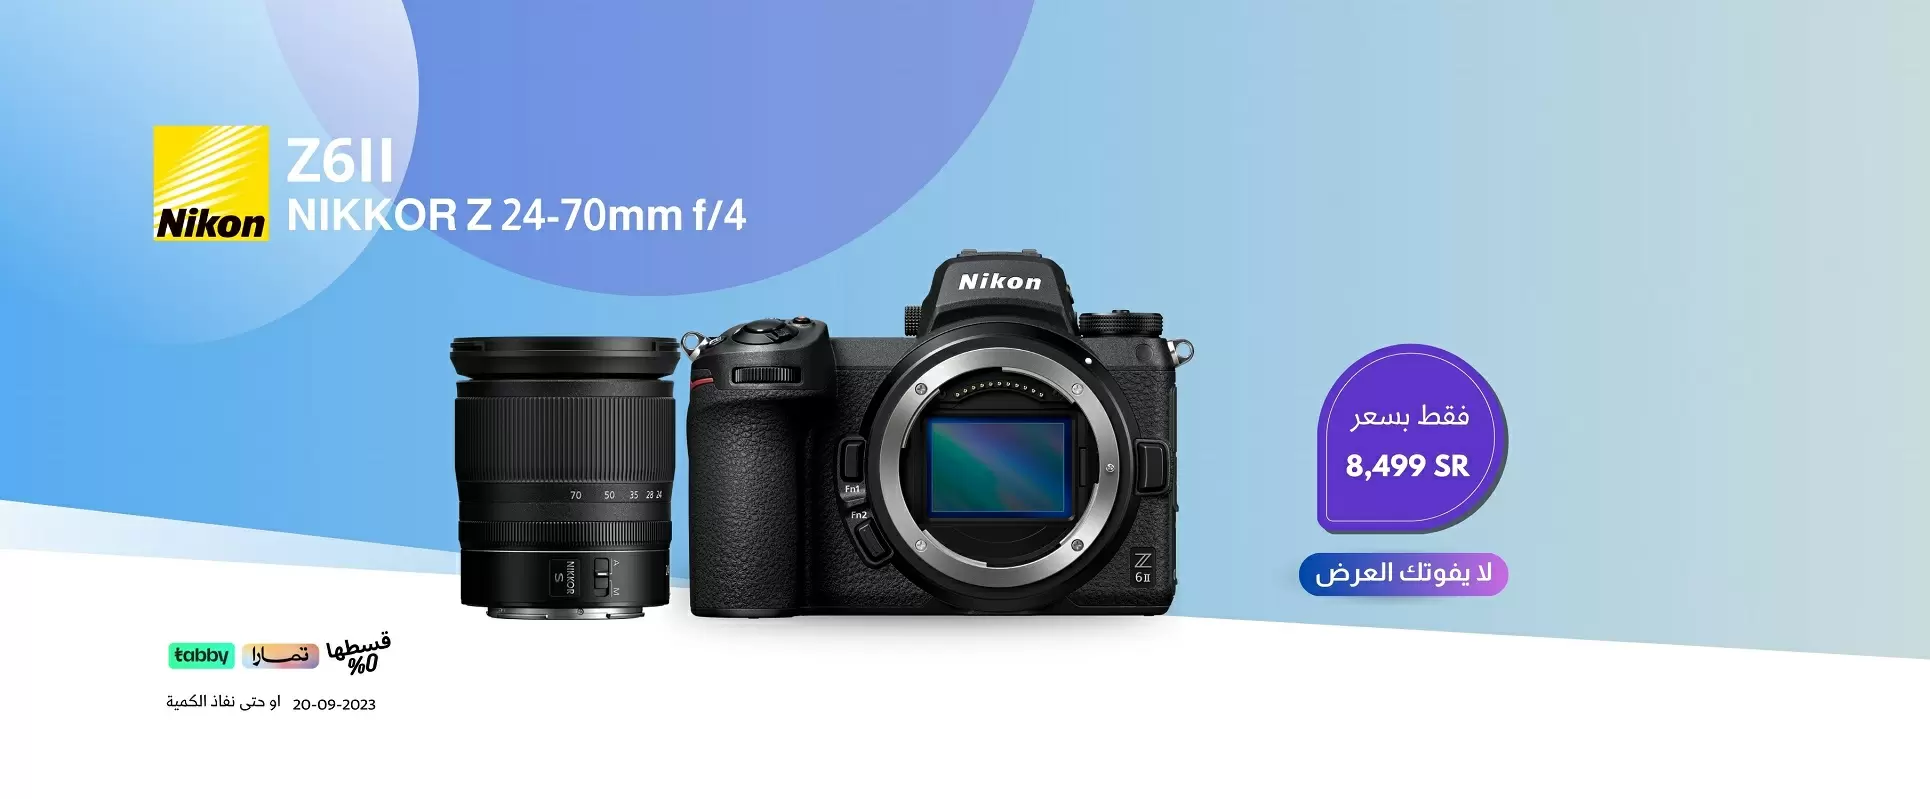 Nikon Z6II offer 